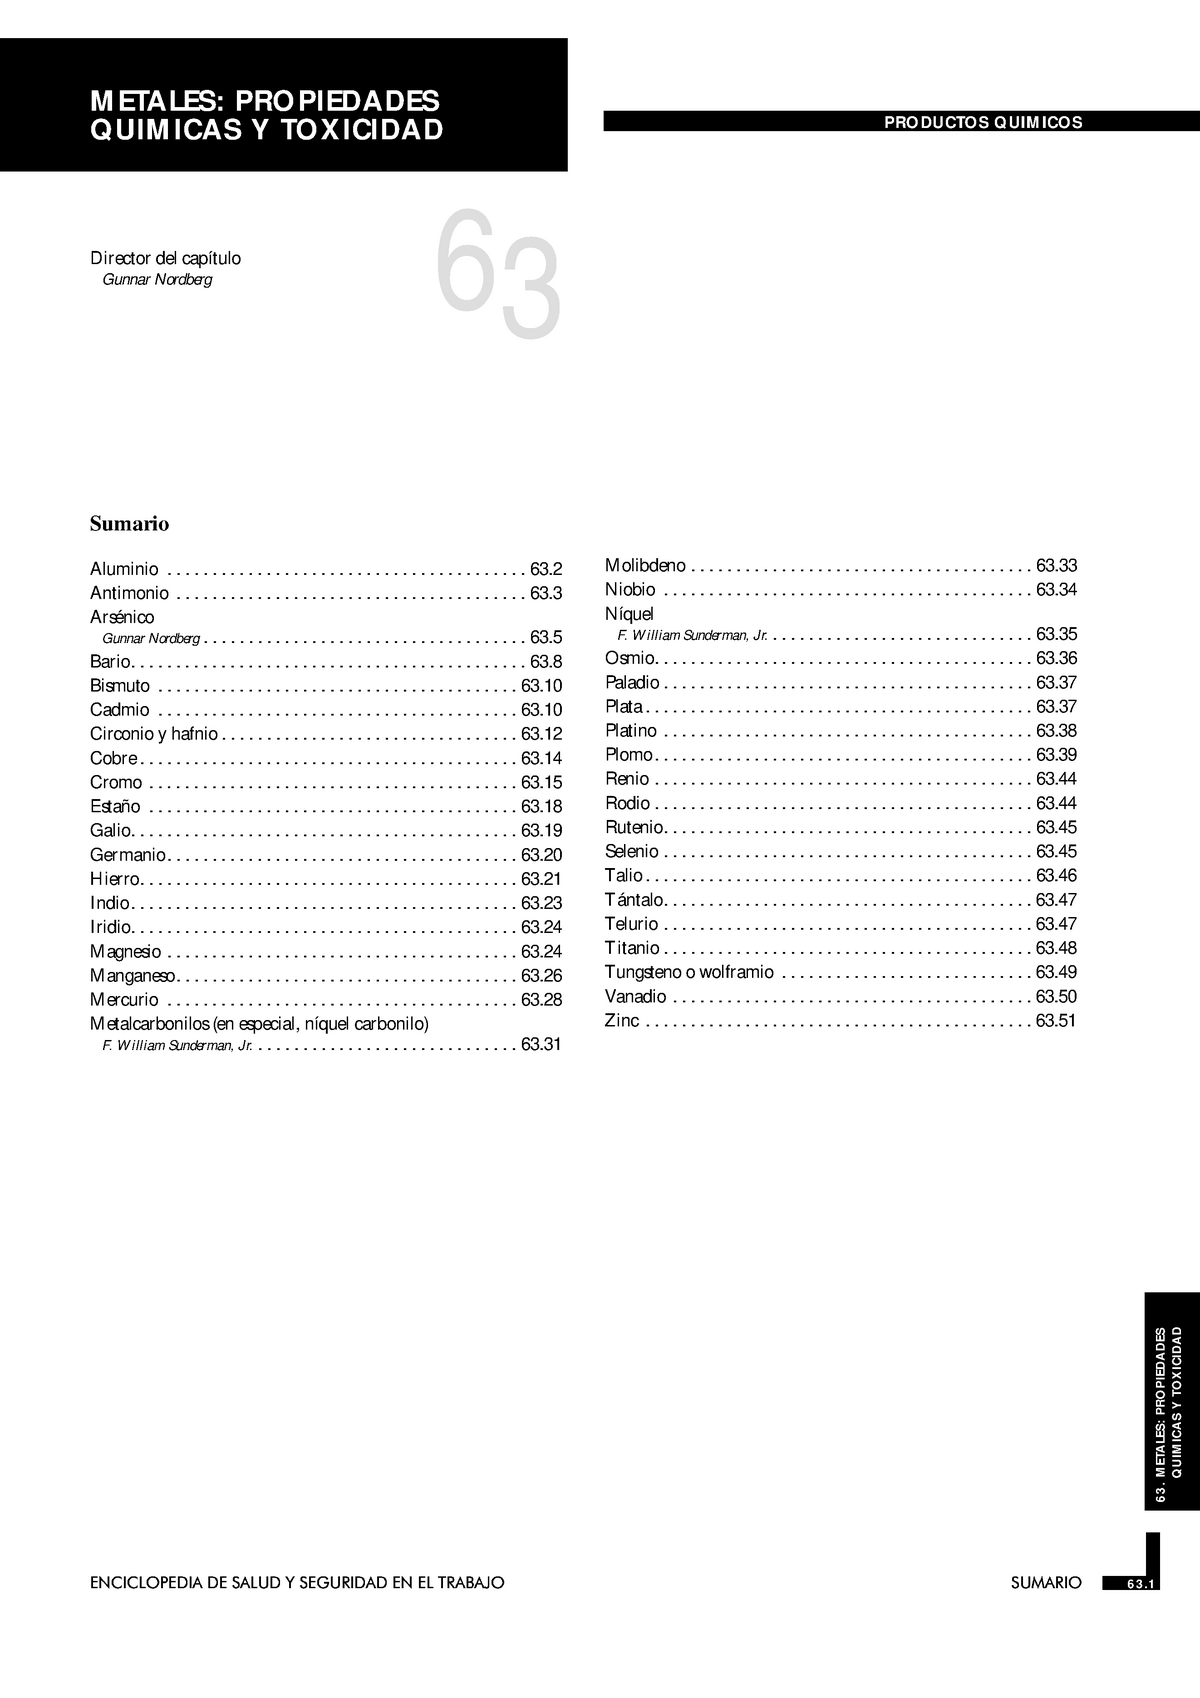 63 Del Insht Espana Apuntes 1 Quimica Inorganica 15555 Studocu